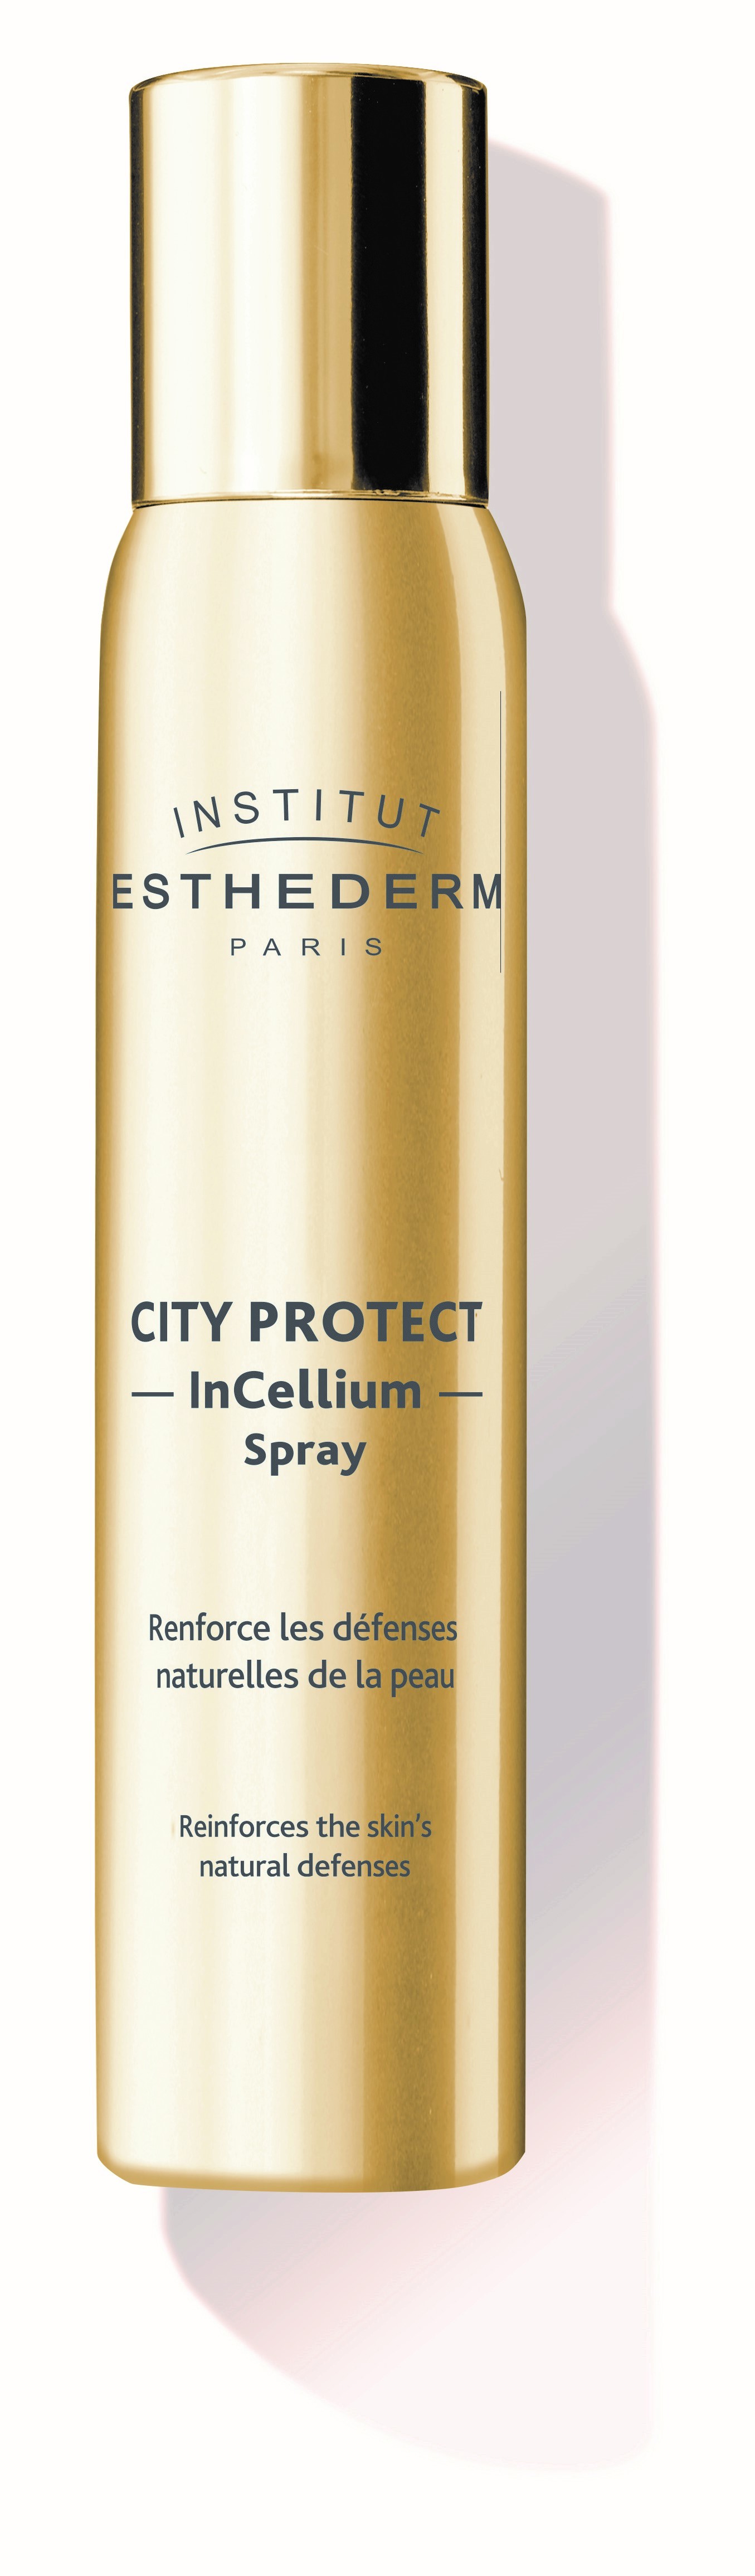 City Protect In Cellium...